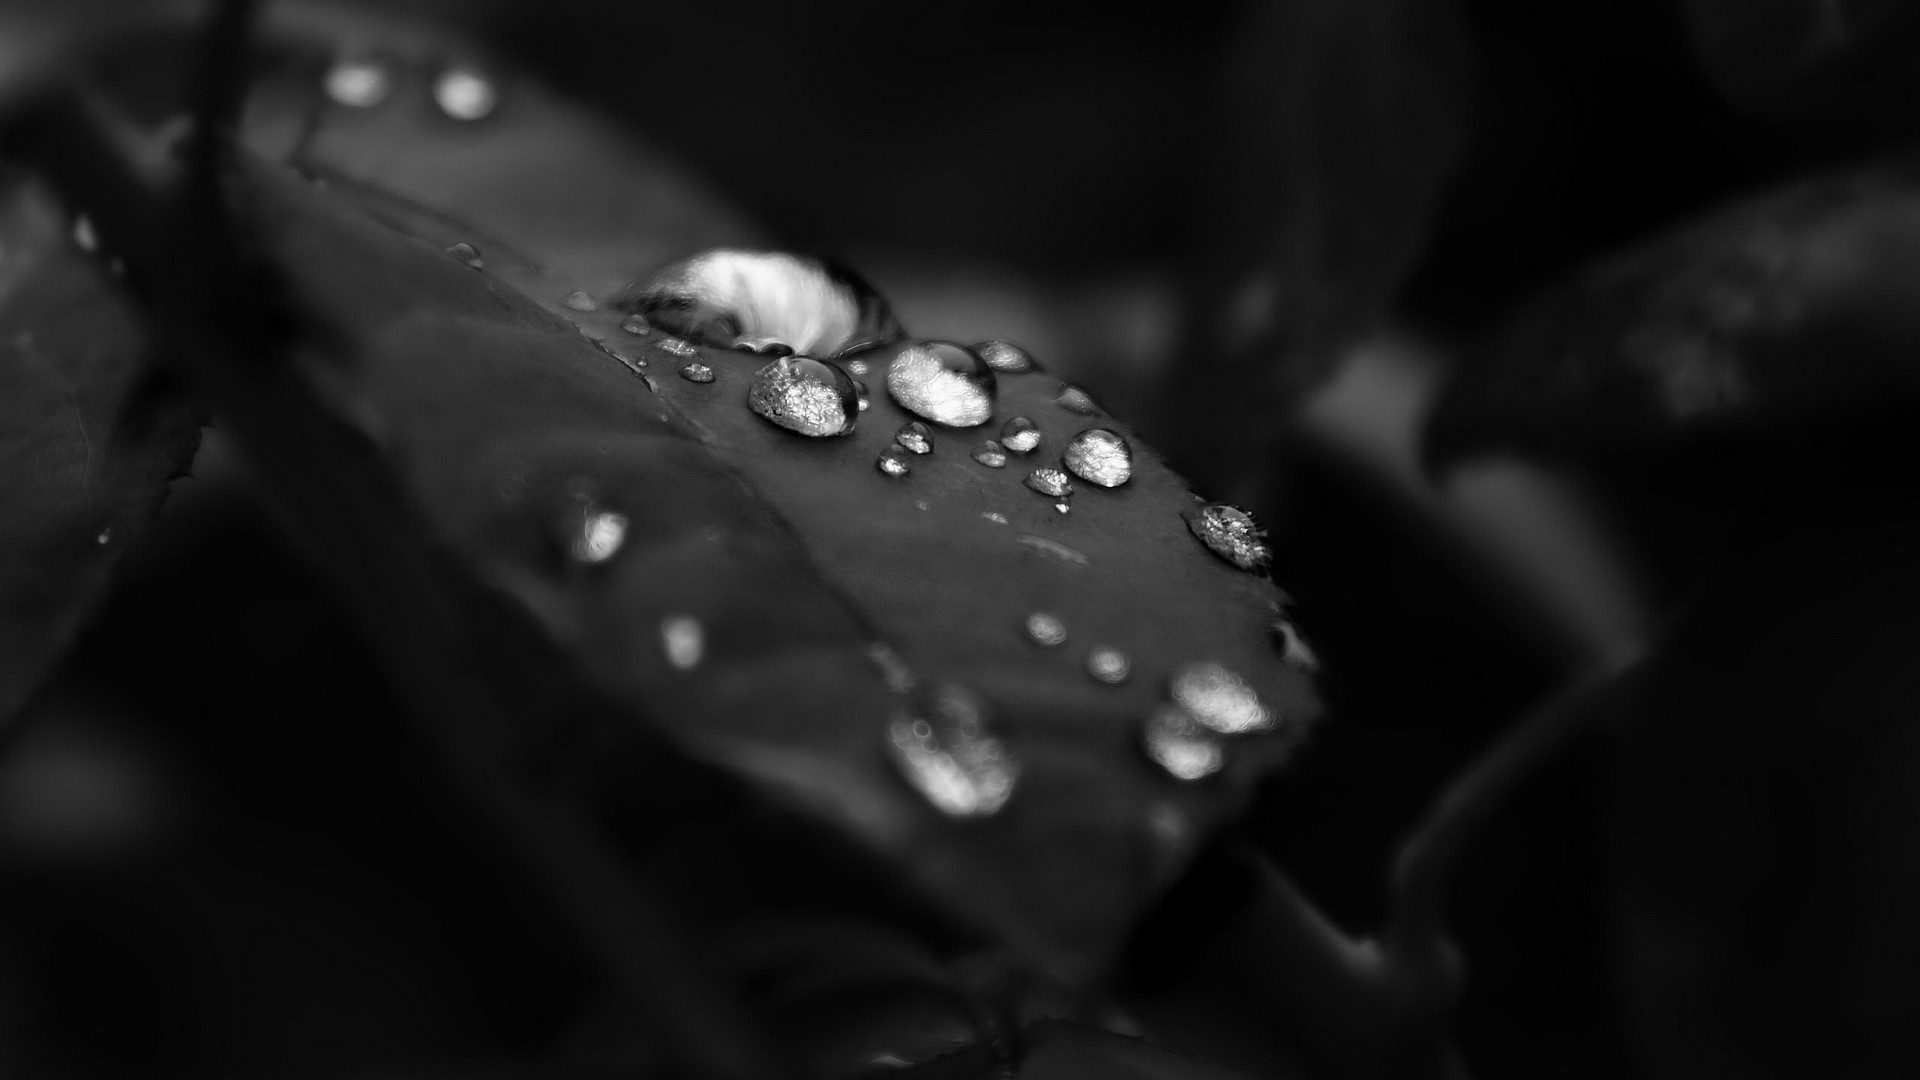 черно-белое изображение, природа, листья, капли воды - обои на рабочий стол